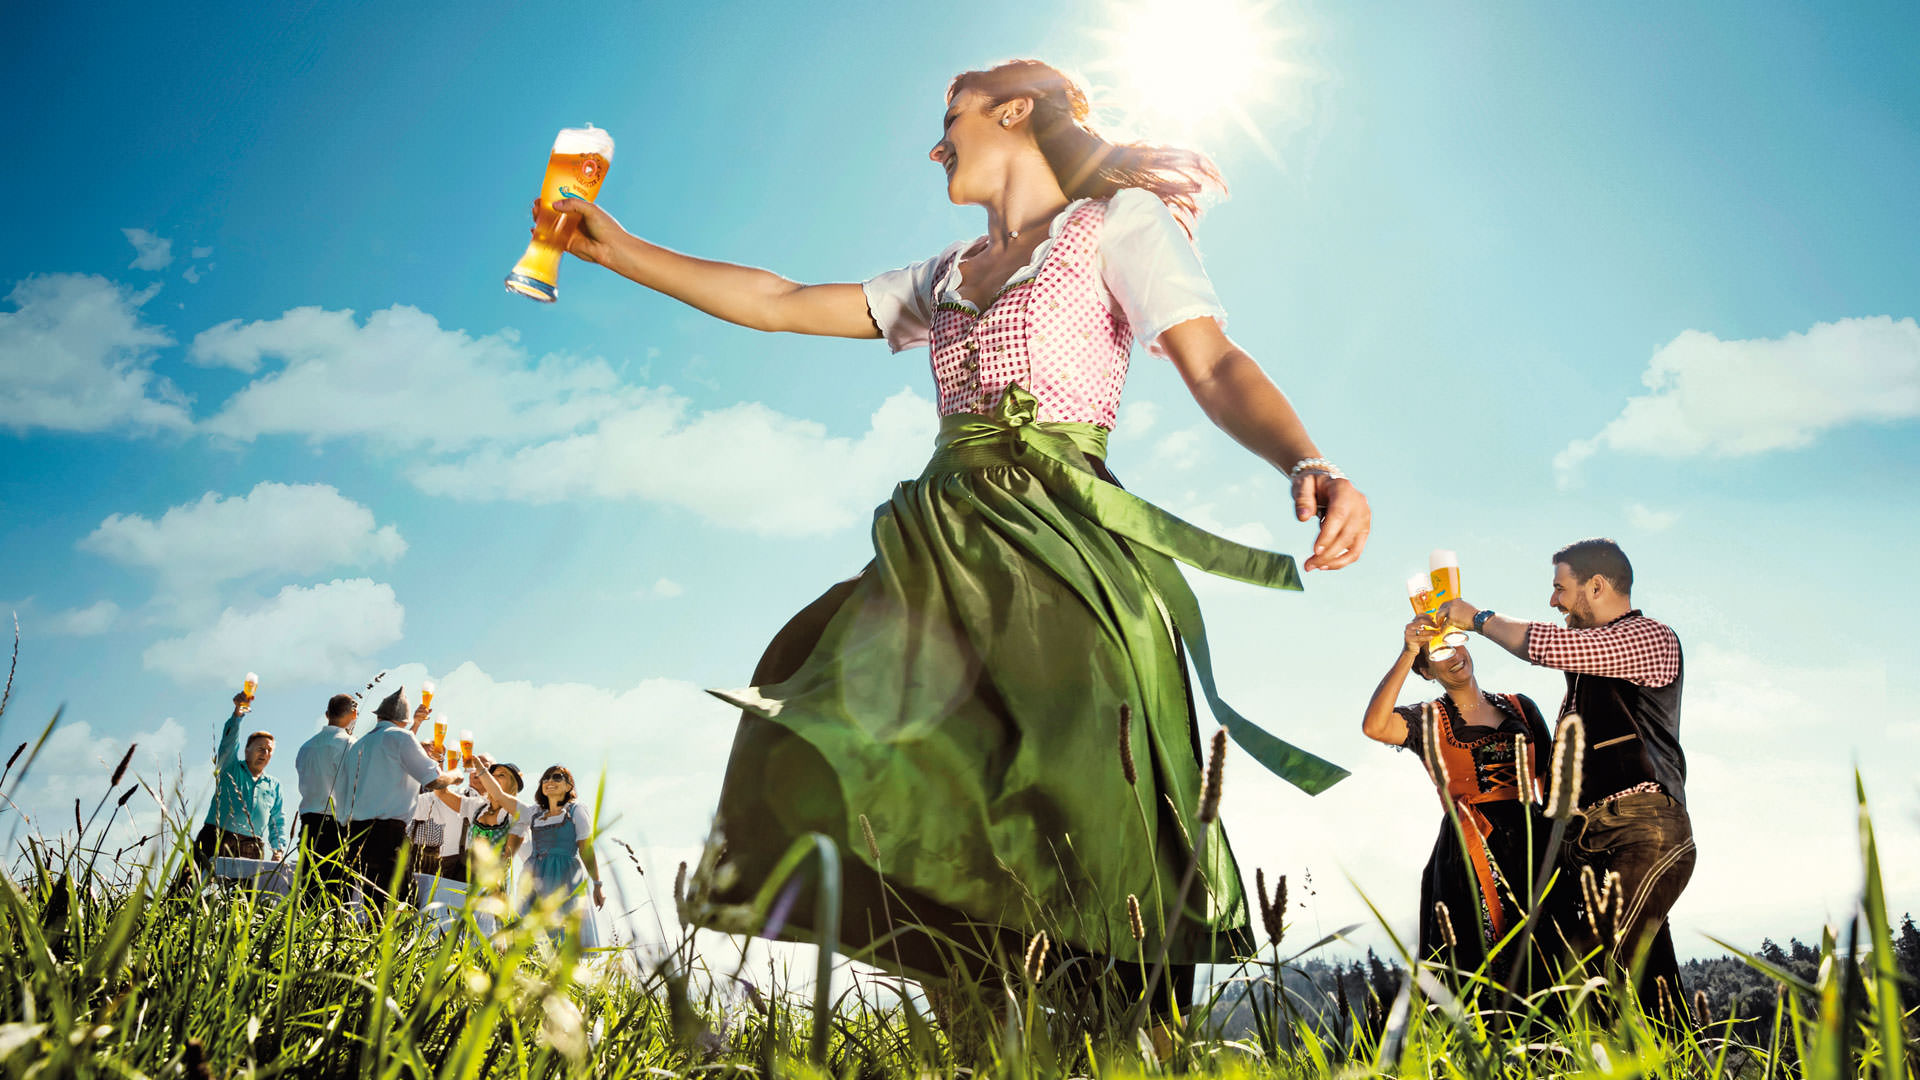 Motiv Dirndl | Meckatzer Weizen Alkoholfrei – Biergenuss aus dem Allgäu | Fotoshooting von Kainz Werbeagentur mit Marcel Mayer